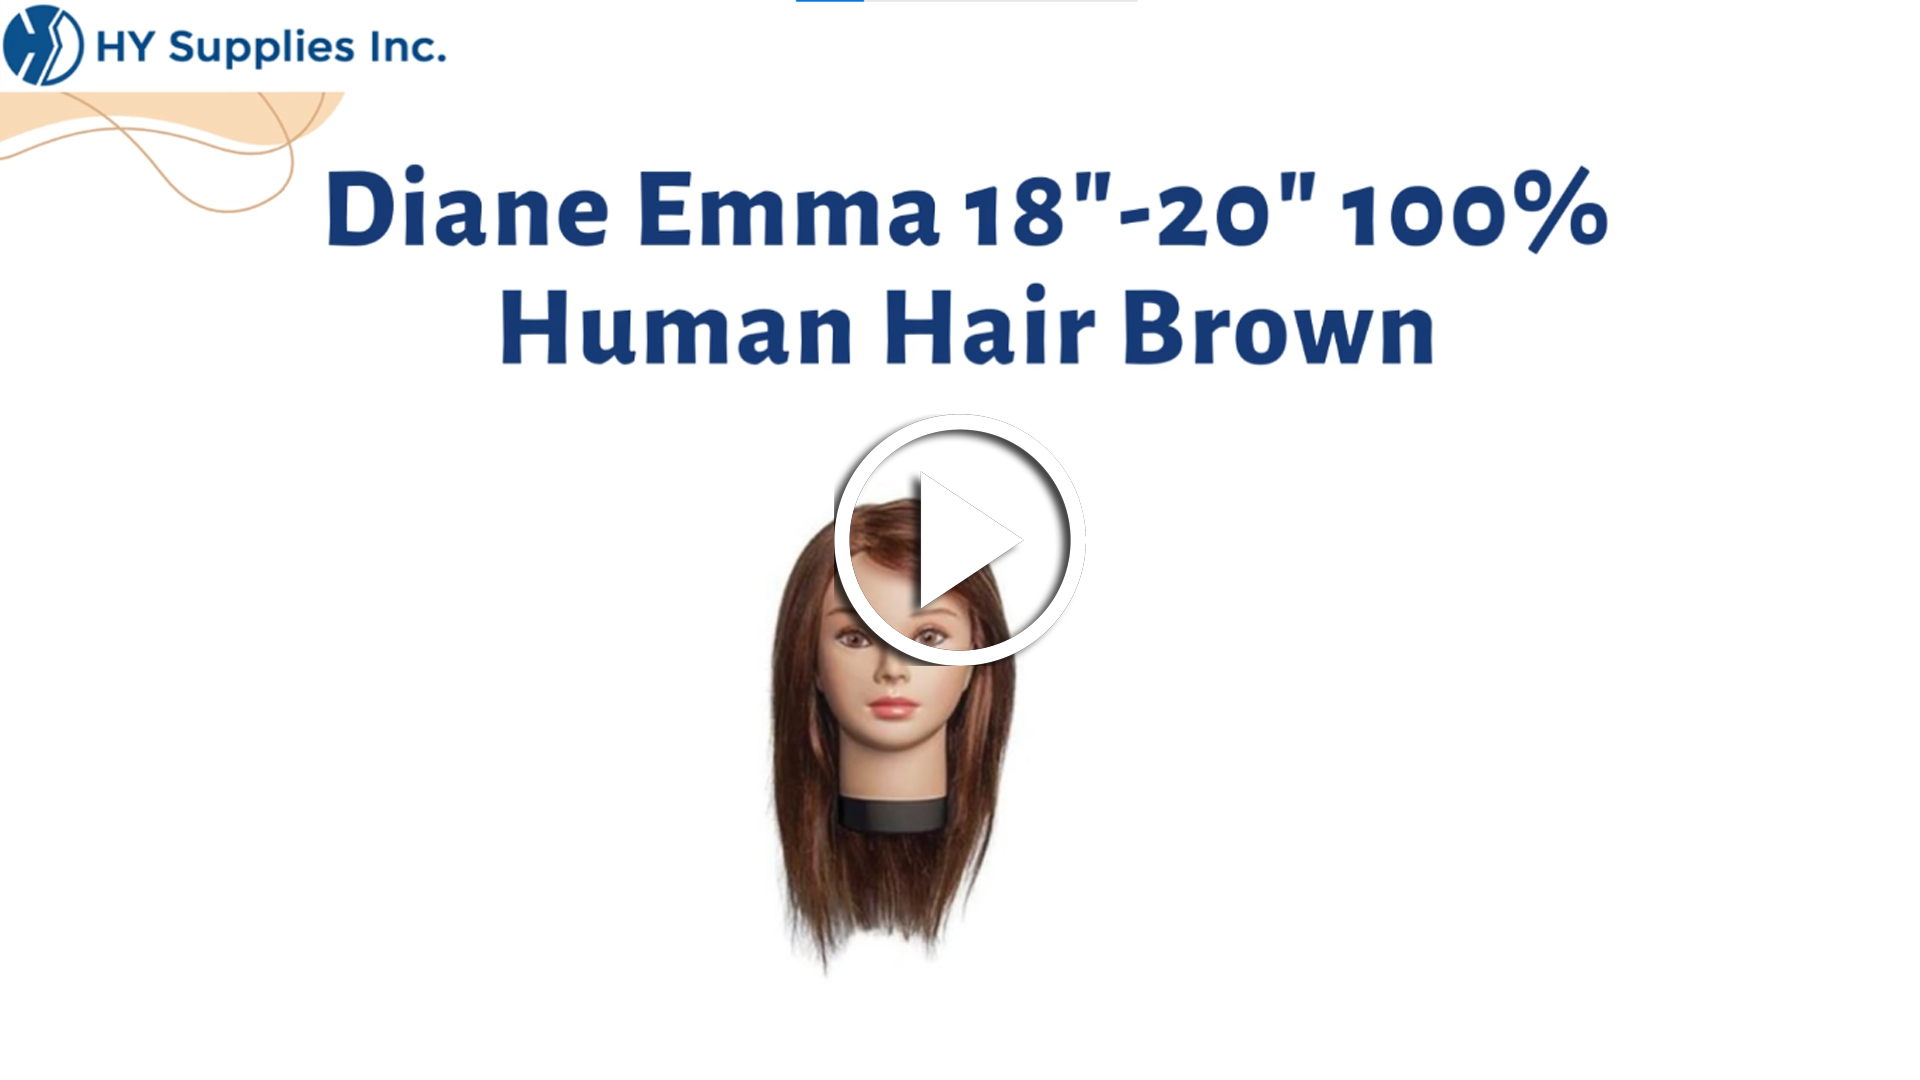 Diane Emma 18"-20" 100% Human Hair Brown